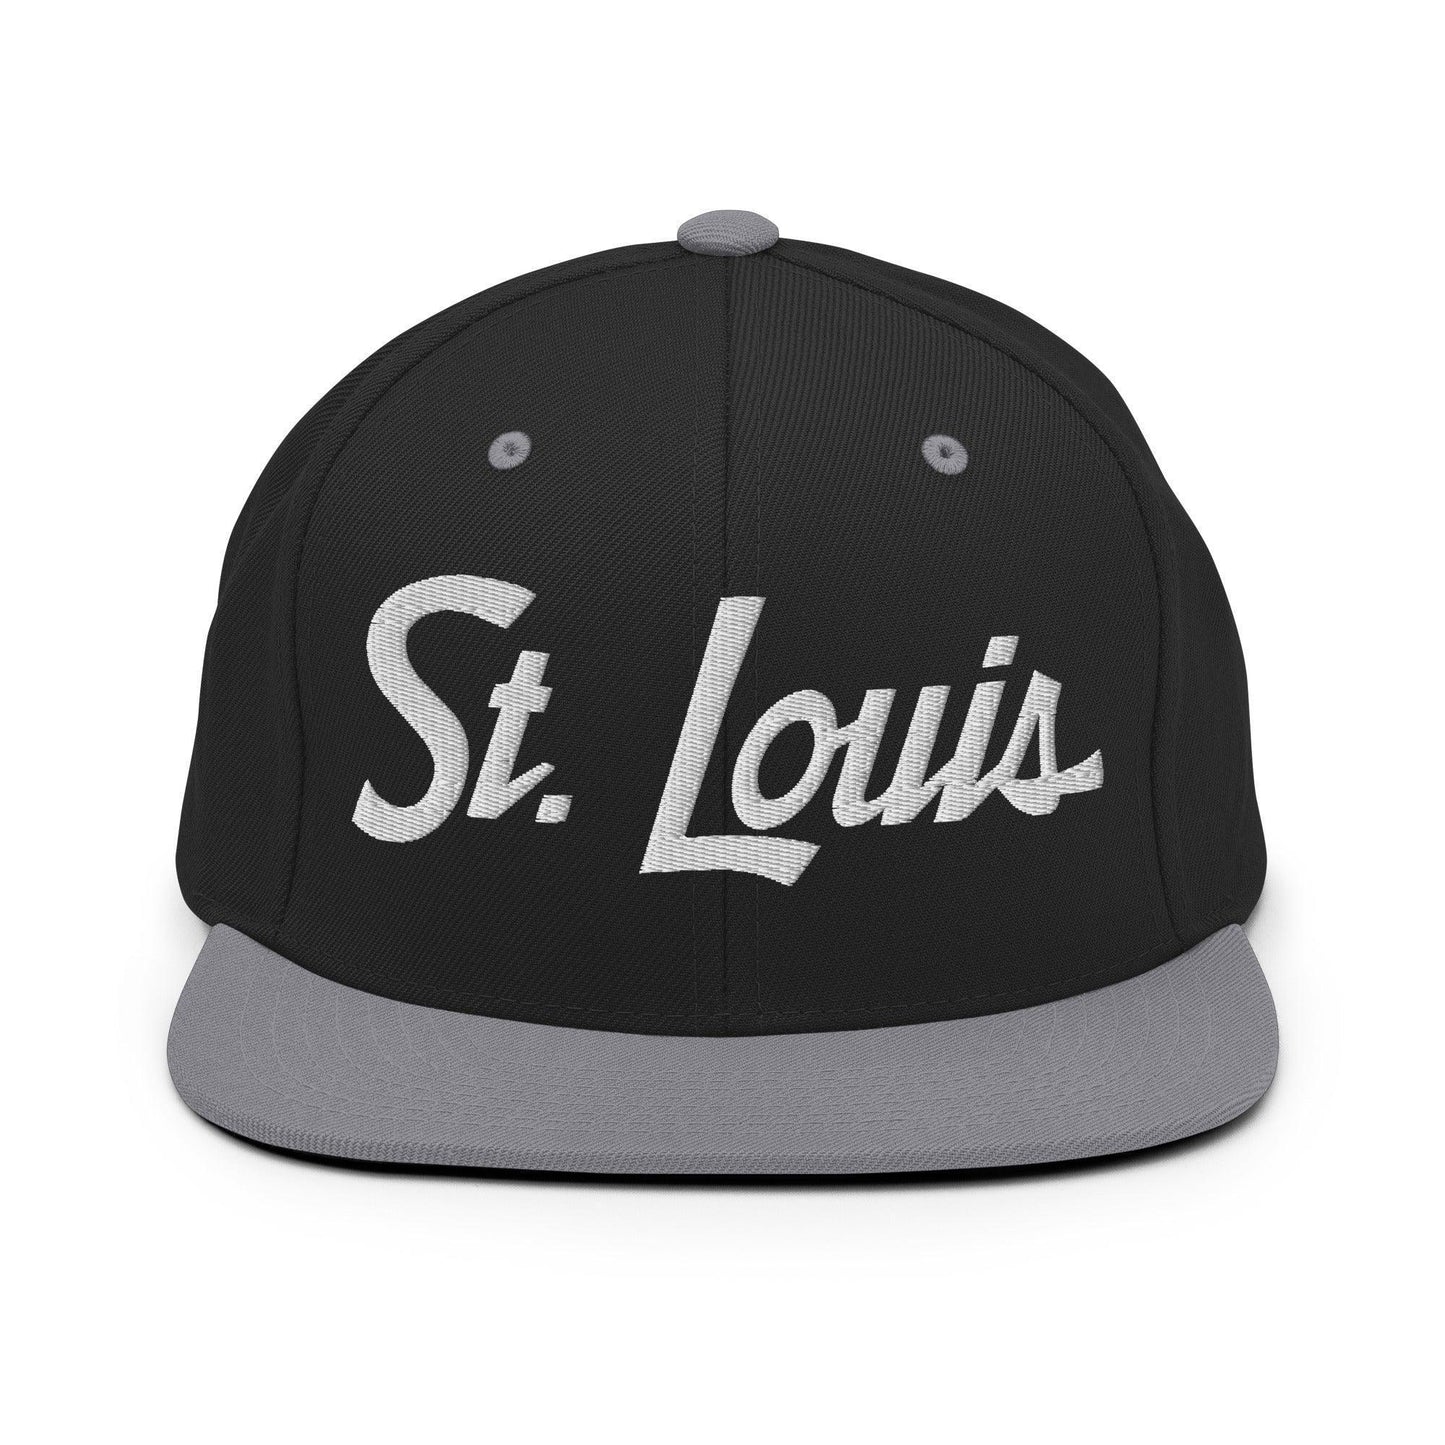 St. Louis Script Snapback Hat Black Silver